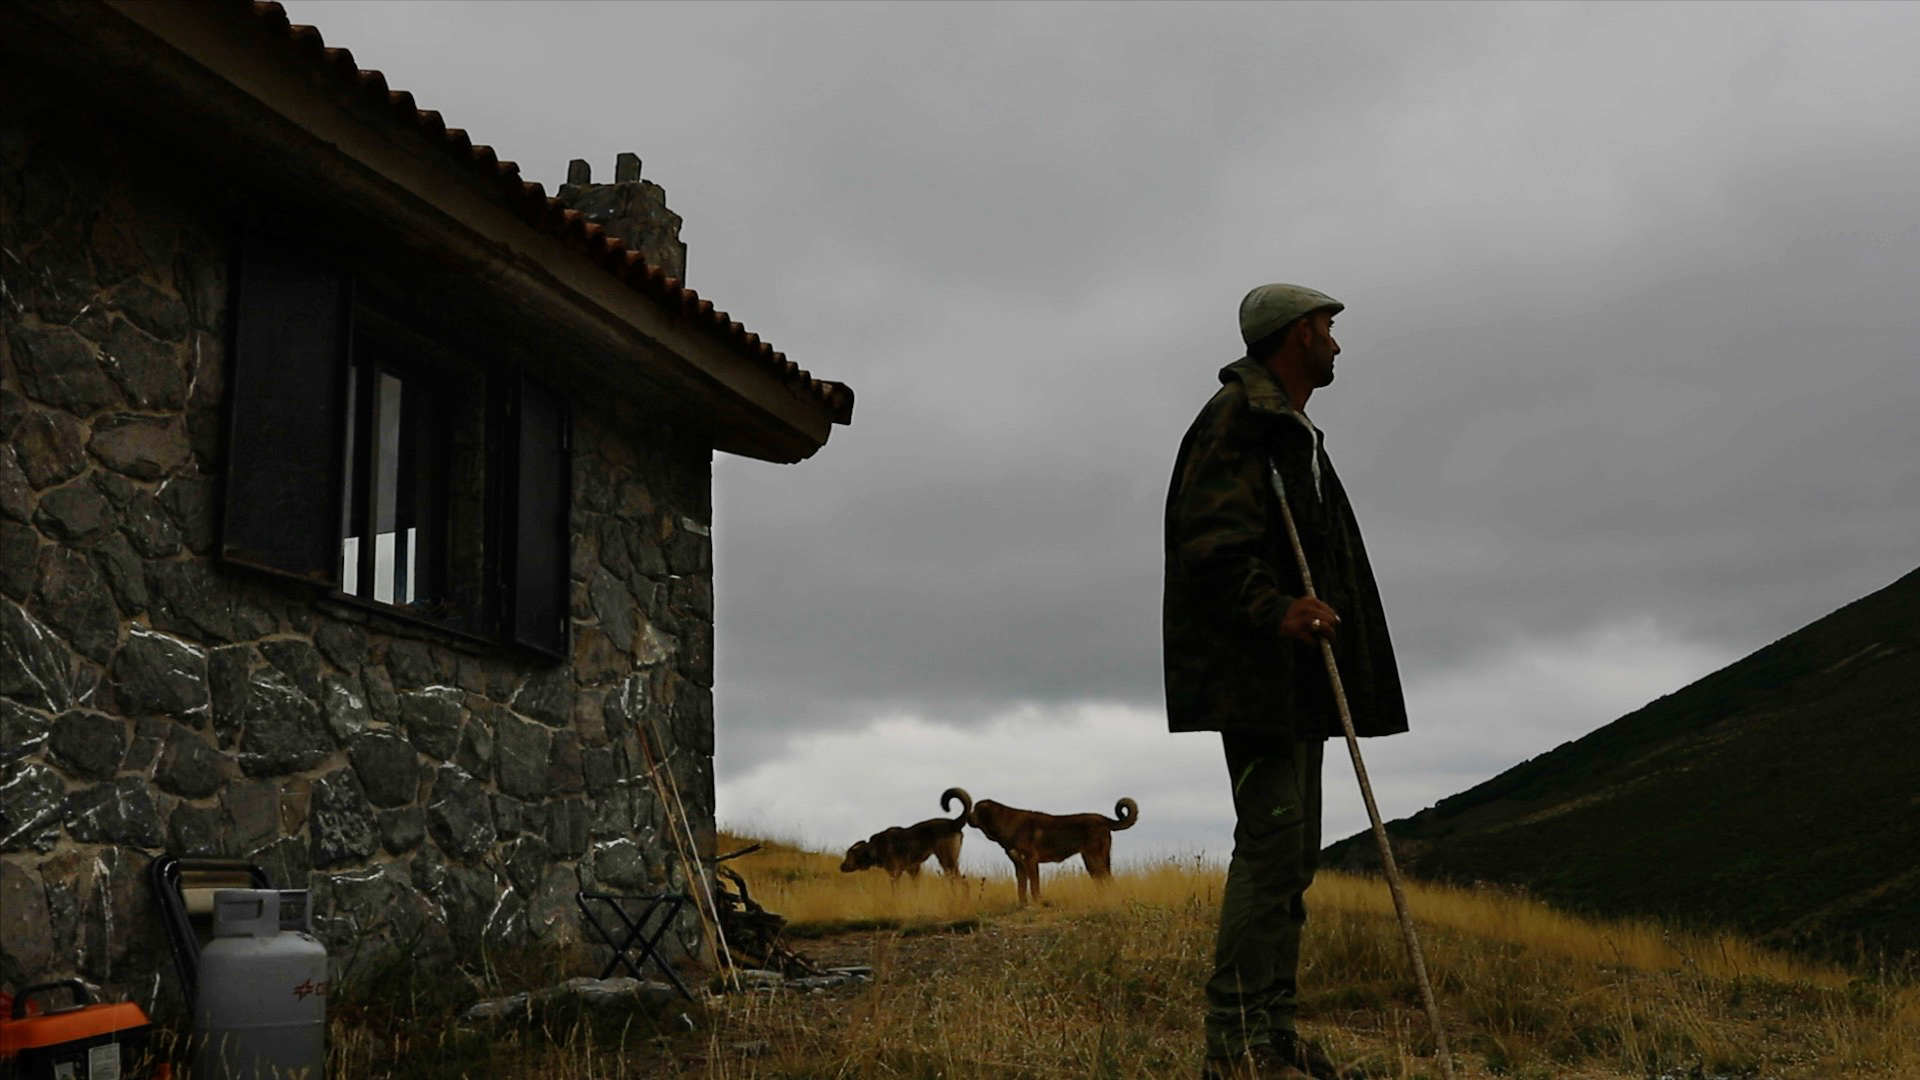 Juan y sus ovejas, pastor protagonista de Sharing the Land por Hakawatifilm dirigido por Ofelia de Pablo y Javier Zurita